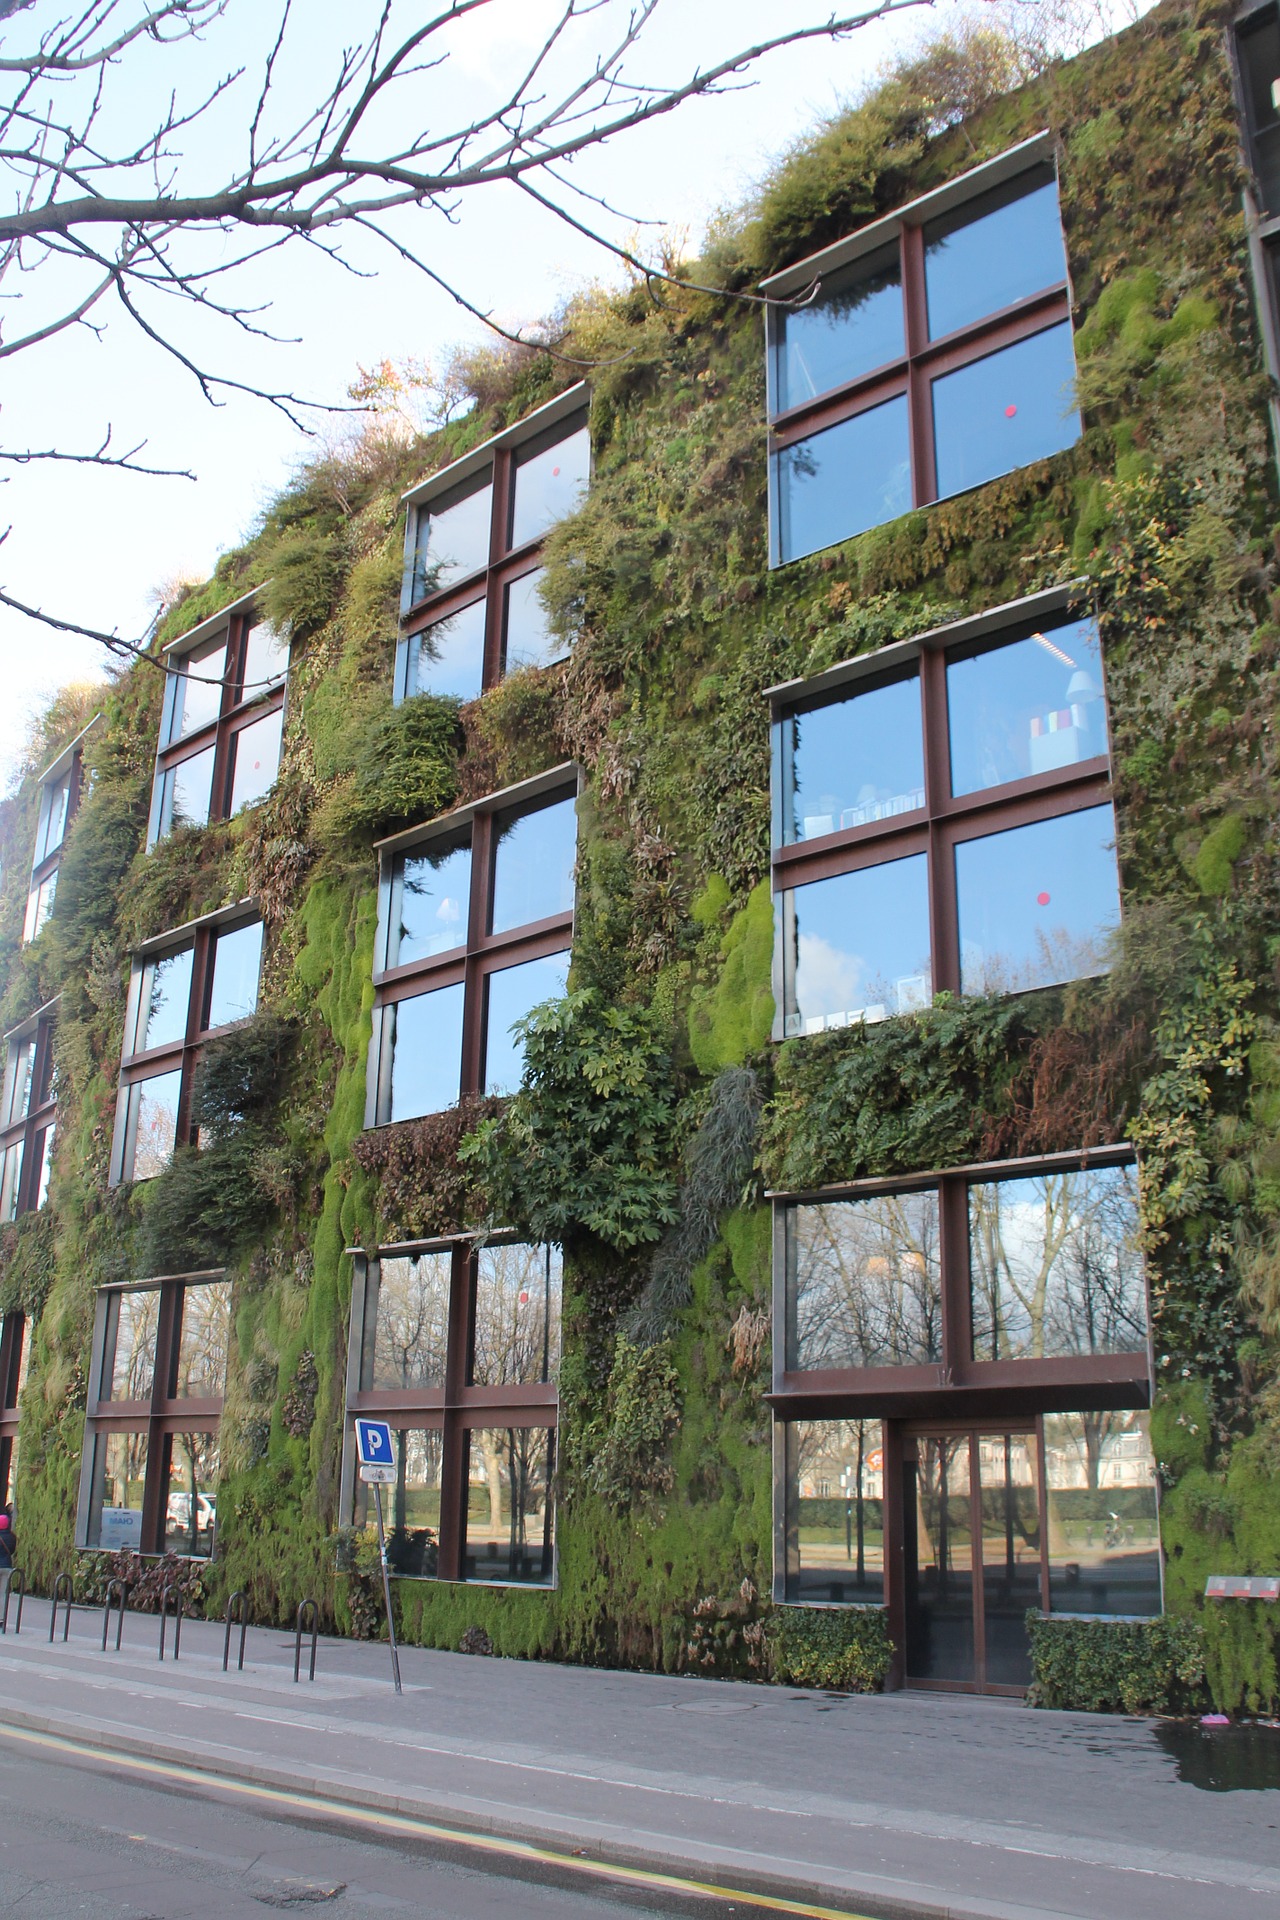 Zielone ogrody to przyszłość aranżowania miejskiej przestrzeni.